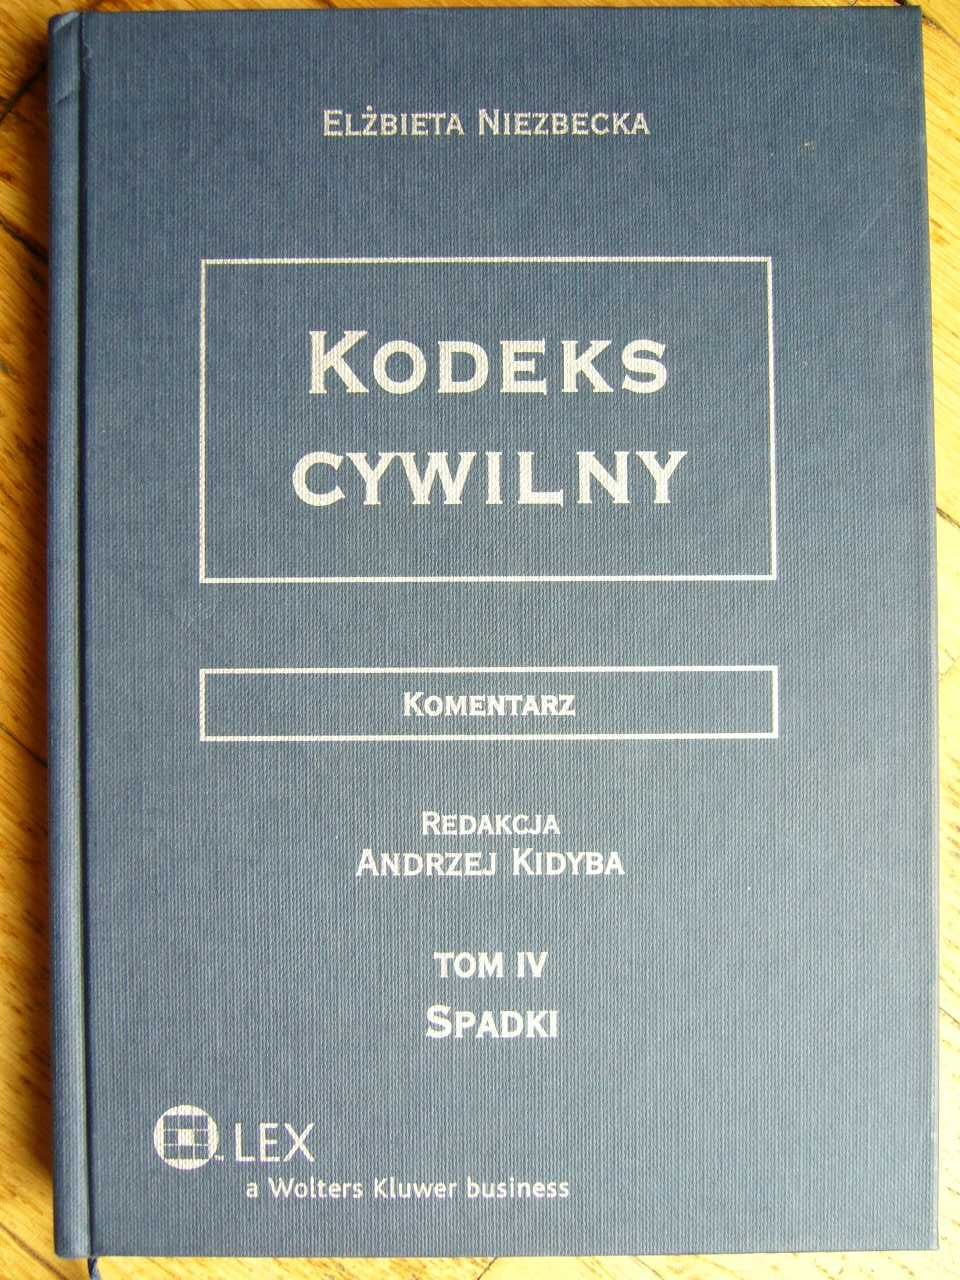 Kodeks cywilny, komentarz, redakcja Andrzej Kidyba, 4 tomy